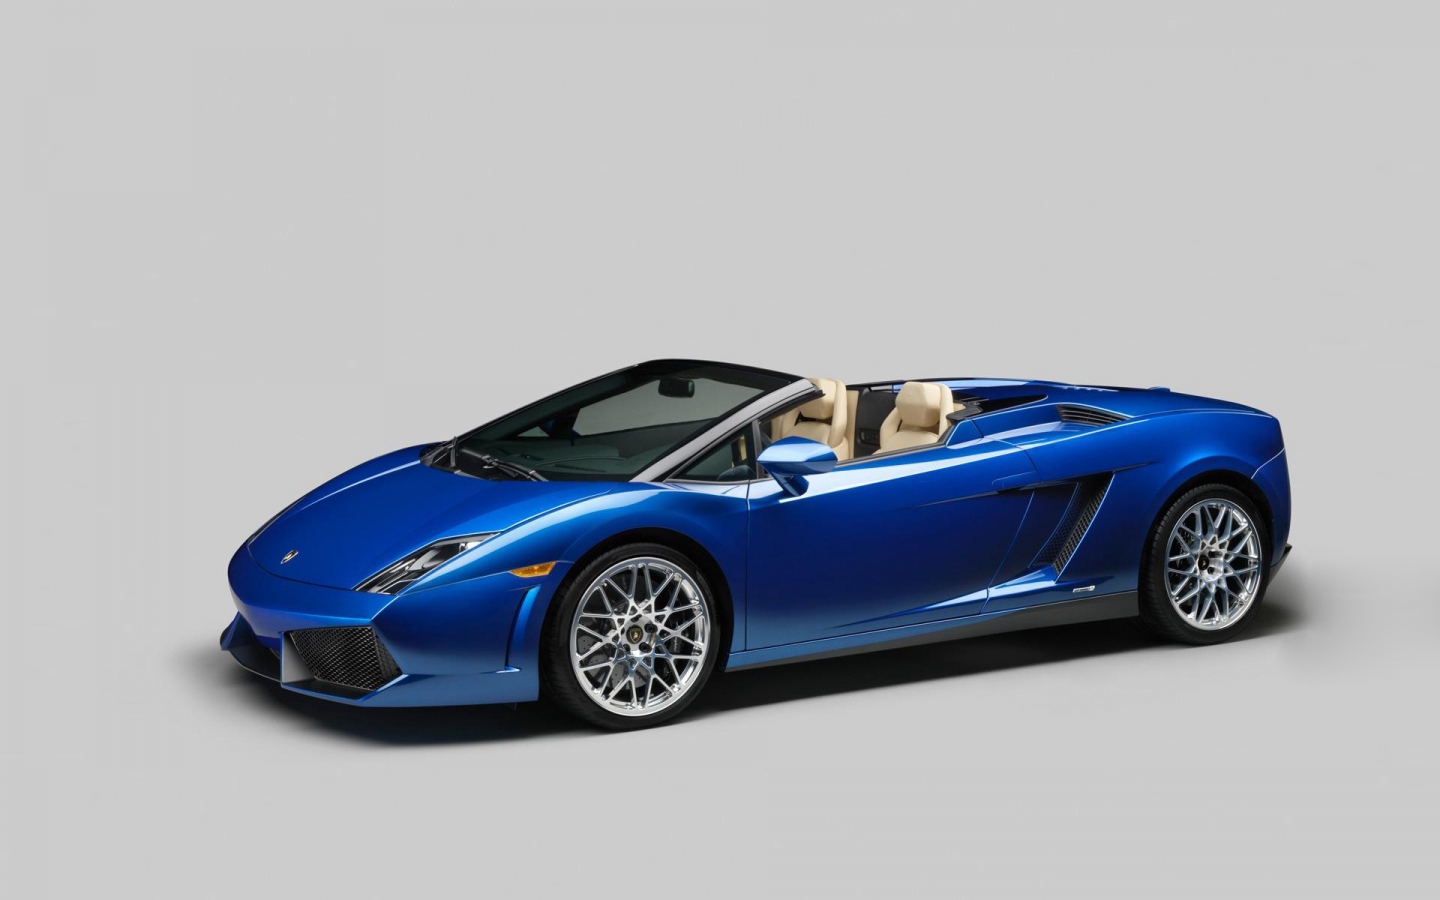 2012 Lamborghini Gallardo LP550 Spyder for 1440 x 900 widescreen resolution